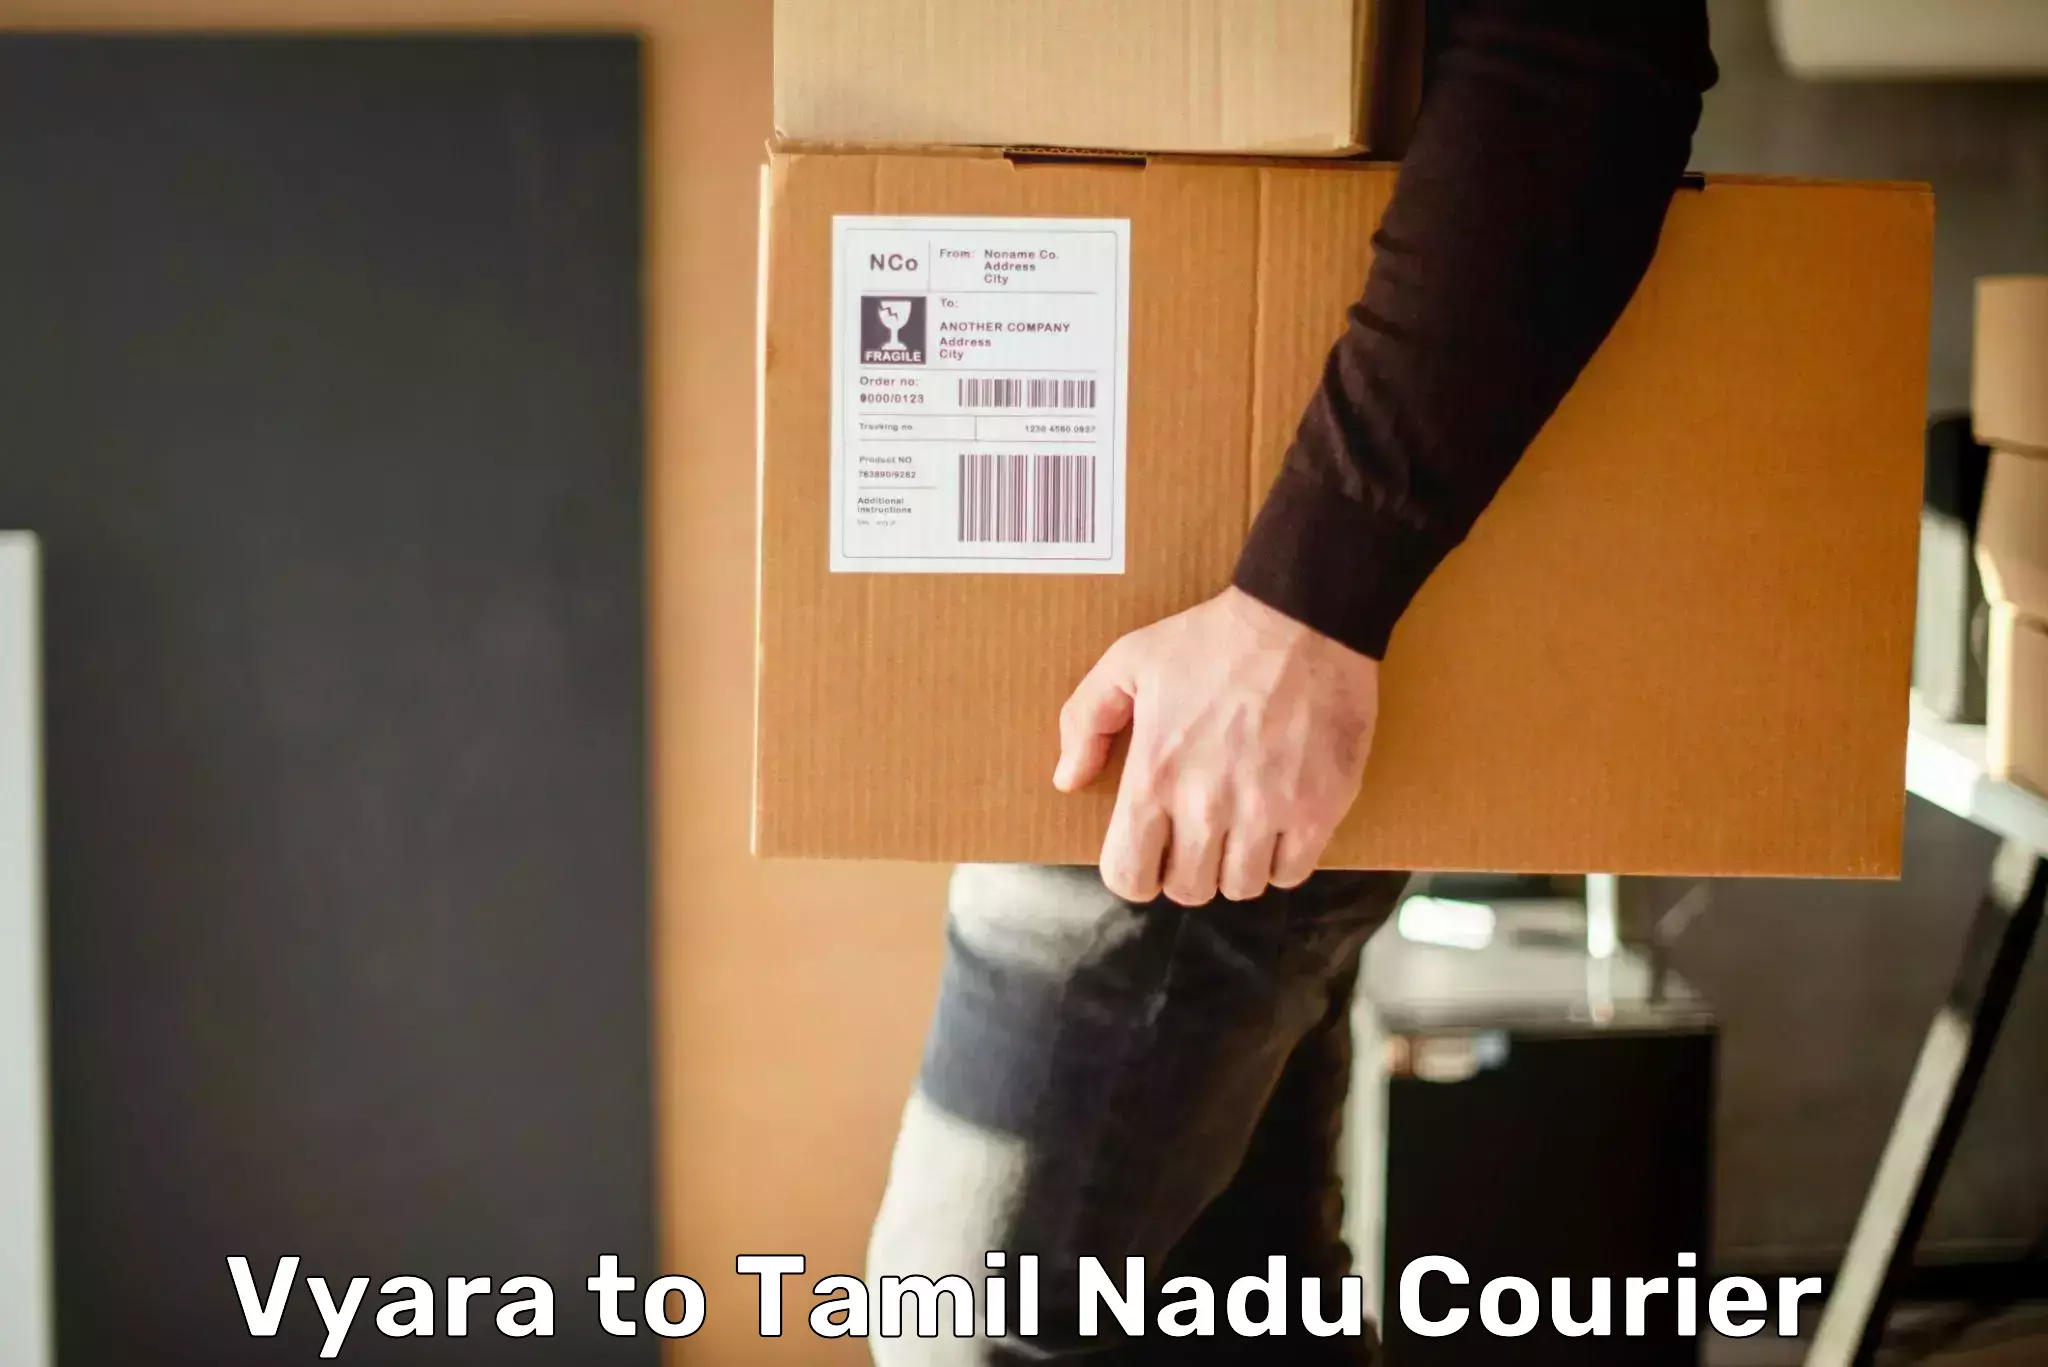 Quick booking process in Vyara to Tamil Nadu